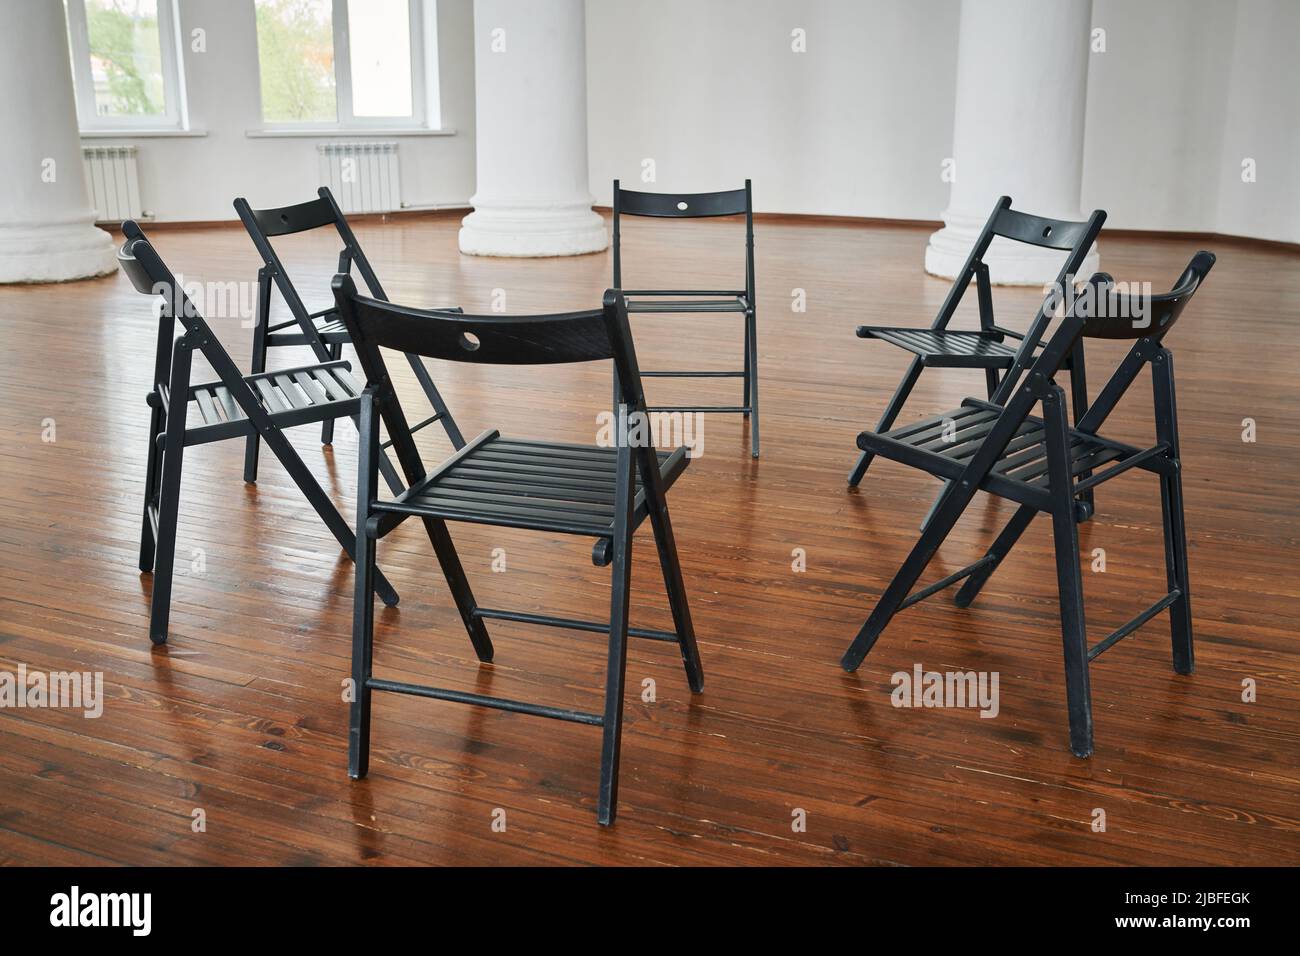 Ein Teil des Hörsaals oder ein geräumiges Auditorium mit einer Gruppe von Stühlen, die einen Kreis bilden, für diejenigen vorbereitet, die an einem Psychotherapiekurs teilnehmen Stockfoto